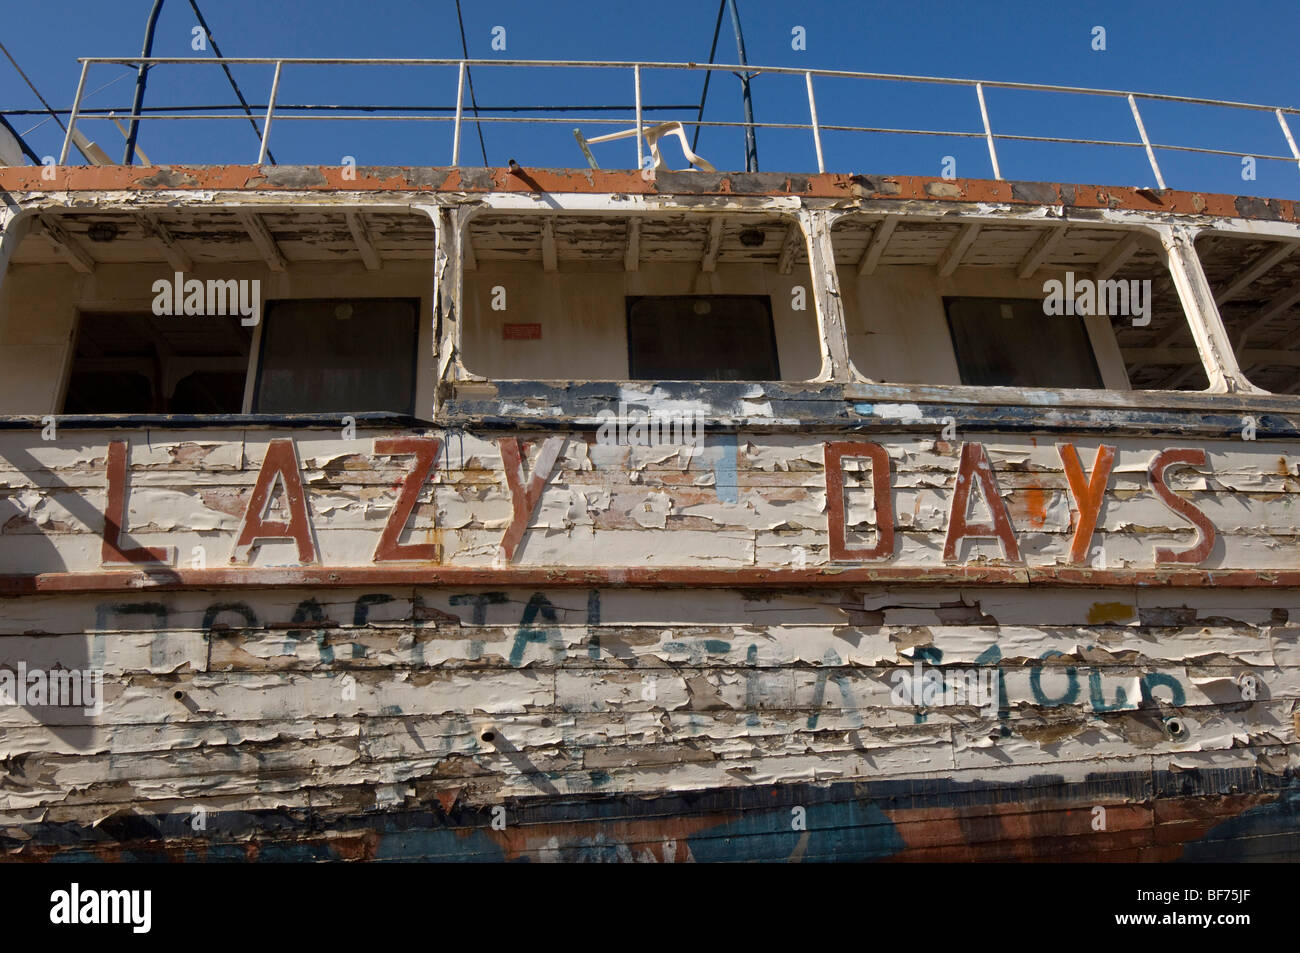 Sfald vernice su un piacere antico sistema di cottura a vapore chiamato 'Lazy Days' in attesa di restauro in un cantiere in Grecia. Foto Stock